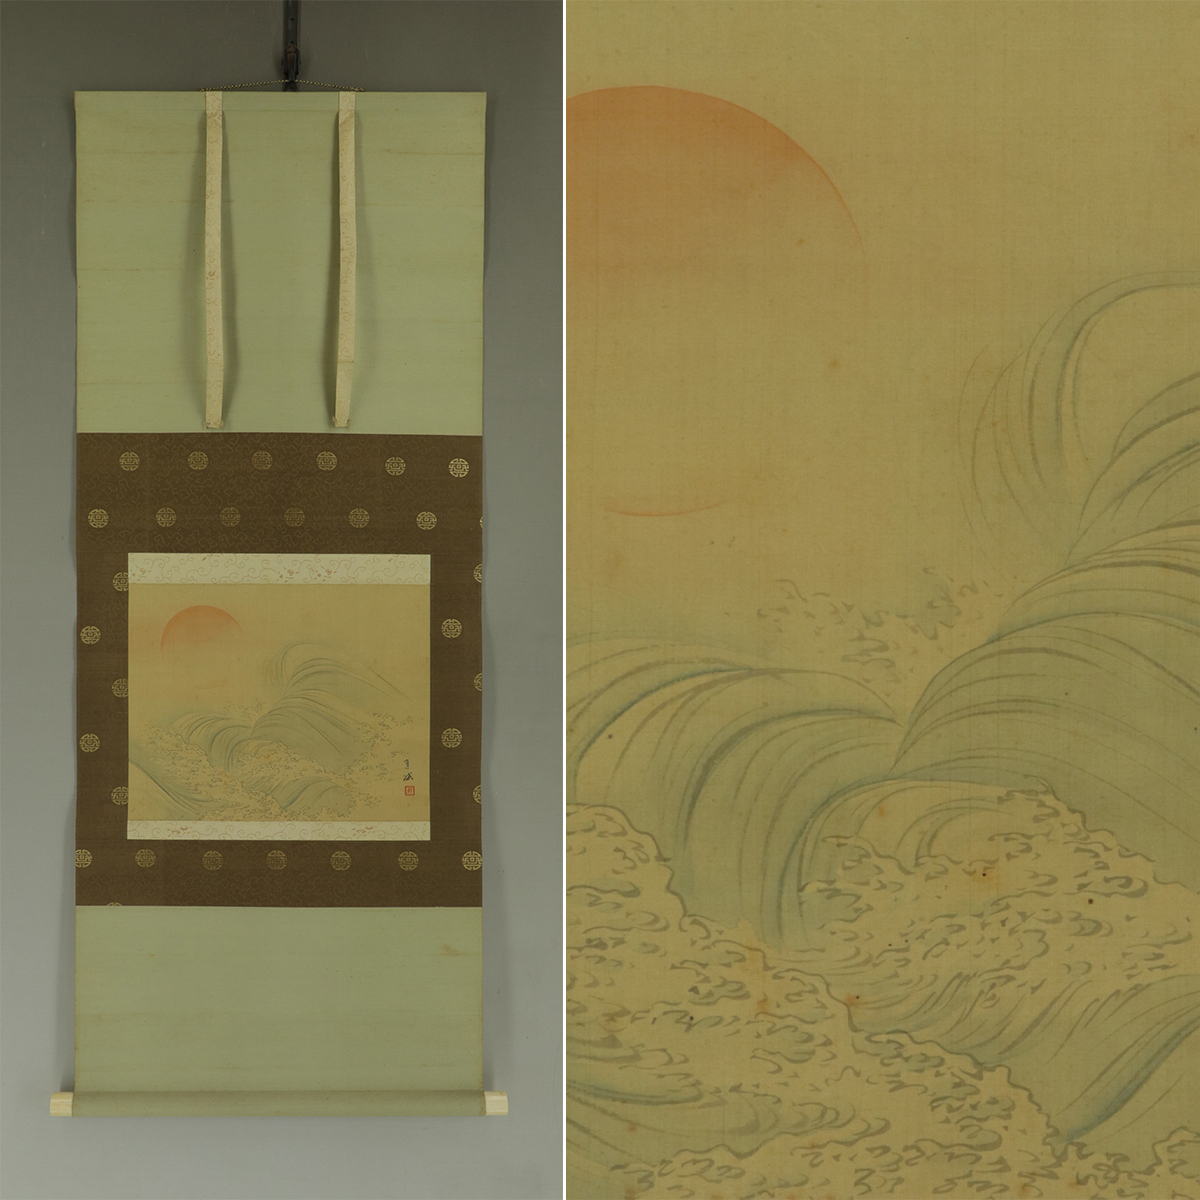 [Trabajo auténtico] Naoki Fukada [Amanecer sobre las olas] ◆ Libro de seda ◆ Caja ◆ Pergamino colgante u11027, cuadro, pintura japonesa, paisaje, Fugetsu